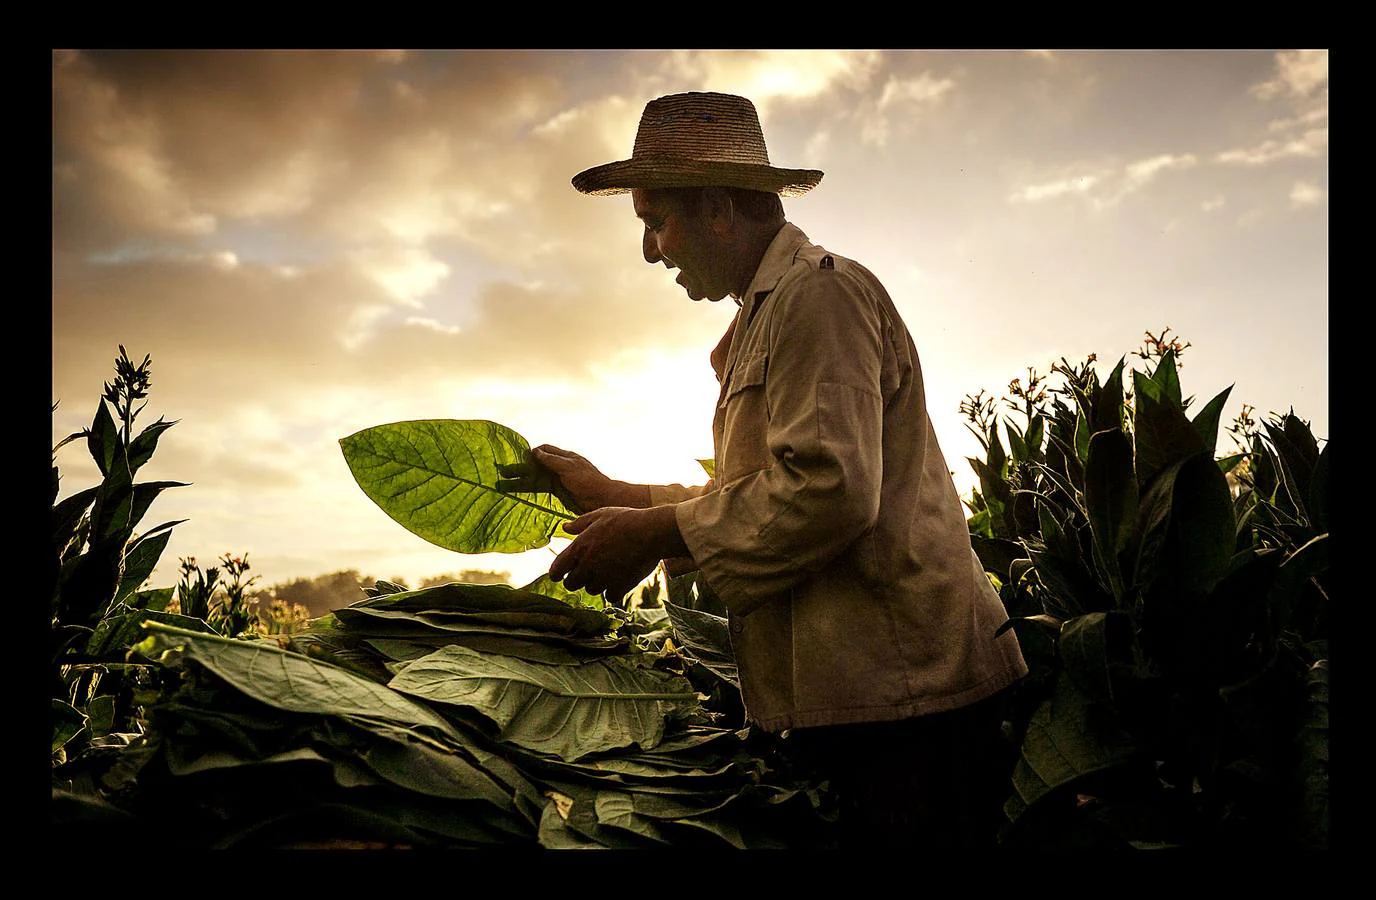 El ocre, el verde y el azul son los colores de la provincia de Pinar del Río, principal productora de tabaco de Cuba, situada en el extremo más occidental de la isla. La región, que goza de un clima y una temperatura que la convierten en un lugar privilegiado para el cultivo del tabaco de mayor calidad, se ha visto afectada en los últimos meses por intensas lluvias, que han dañado el 70 por ciento de las plantaciones de caña y obligado a los productores de tabaco a extender su siembra hasta finales de febrero. A pesar de las dificultades, los vegueros esperan entregar este año más de 32.000 toneladas de hojas a la industria de cigarros y habanos, una producción que ocupa el cuarto puesto en el conjunto del PIB cubano.